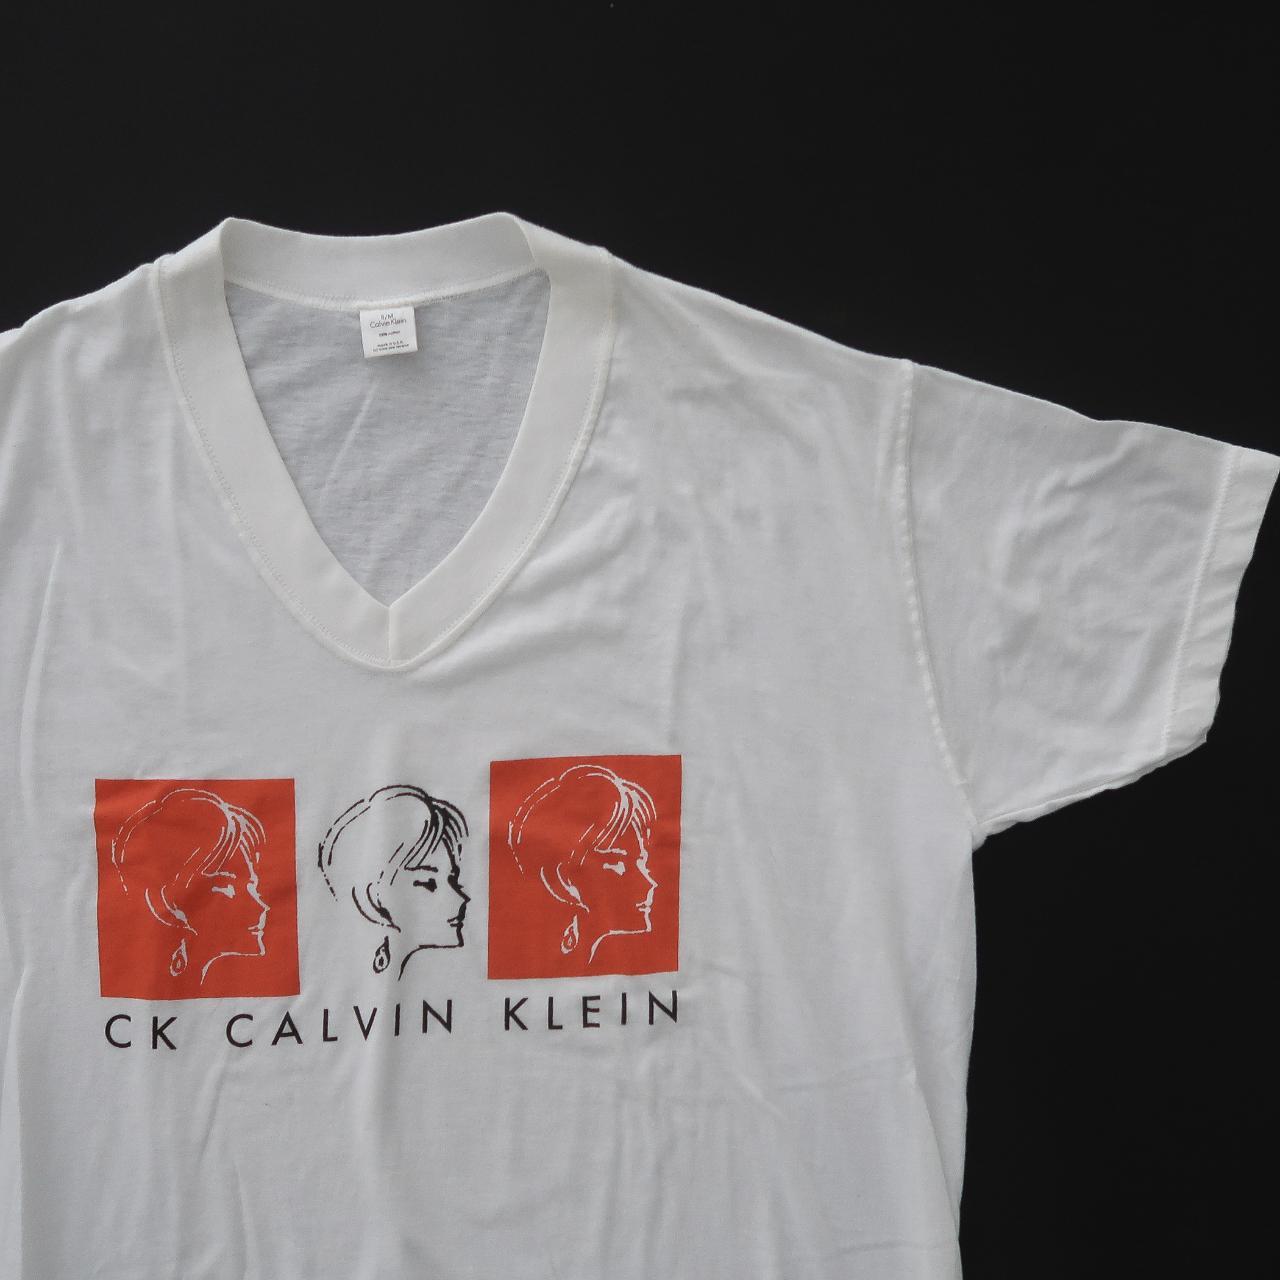 Vintage 90s Calvin sleep - Depop retro shirt. Rad... Klein